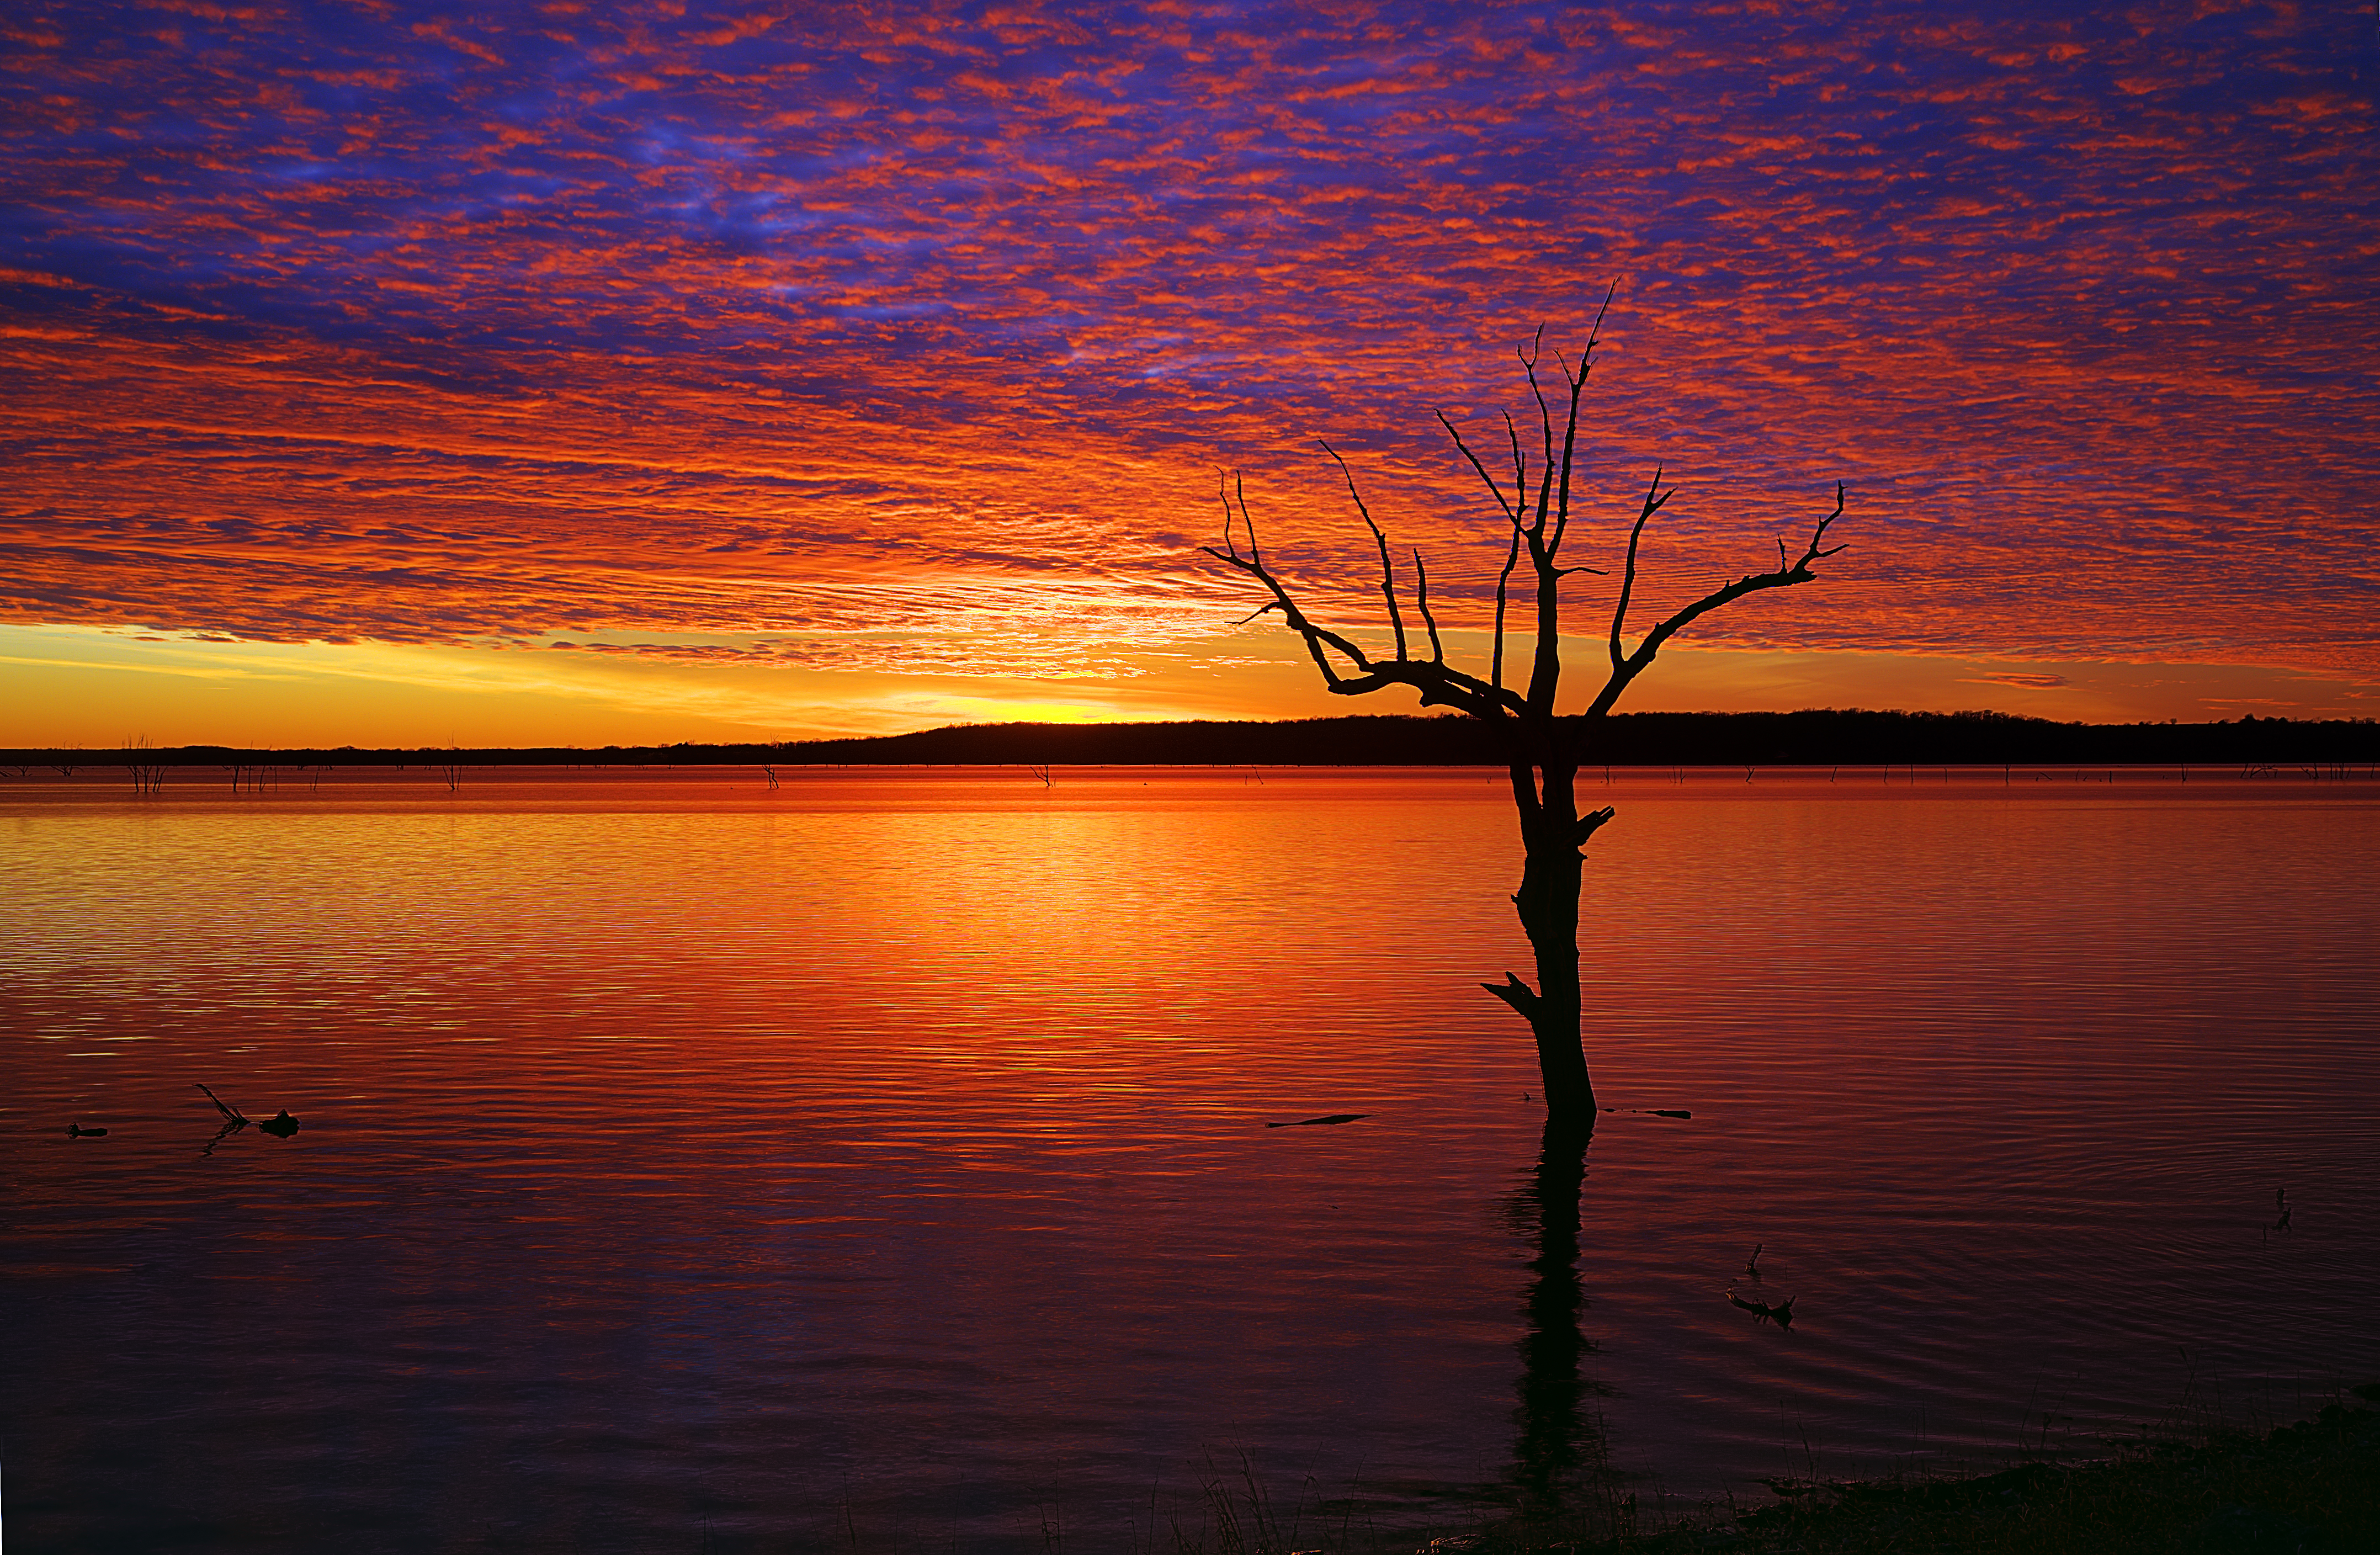 フリー画像 自然風景 湖の風景 夕日 夕焼け 夕暮れ 樹木の風景 アメリカ風景 フリー素材 画像素材なら 無料 フリー写真素材のフリーフォト